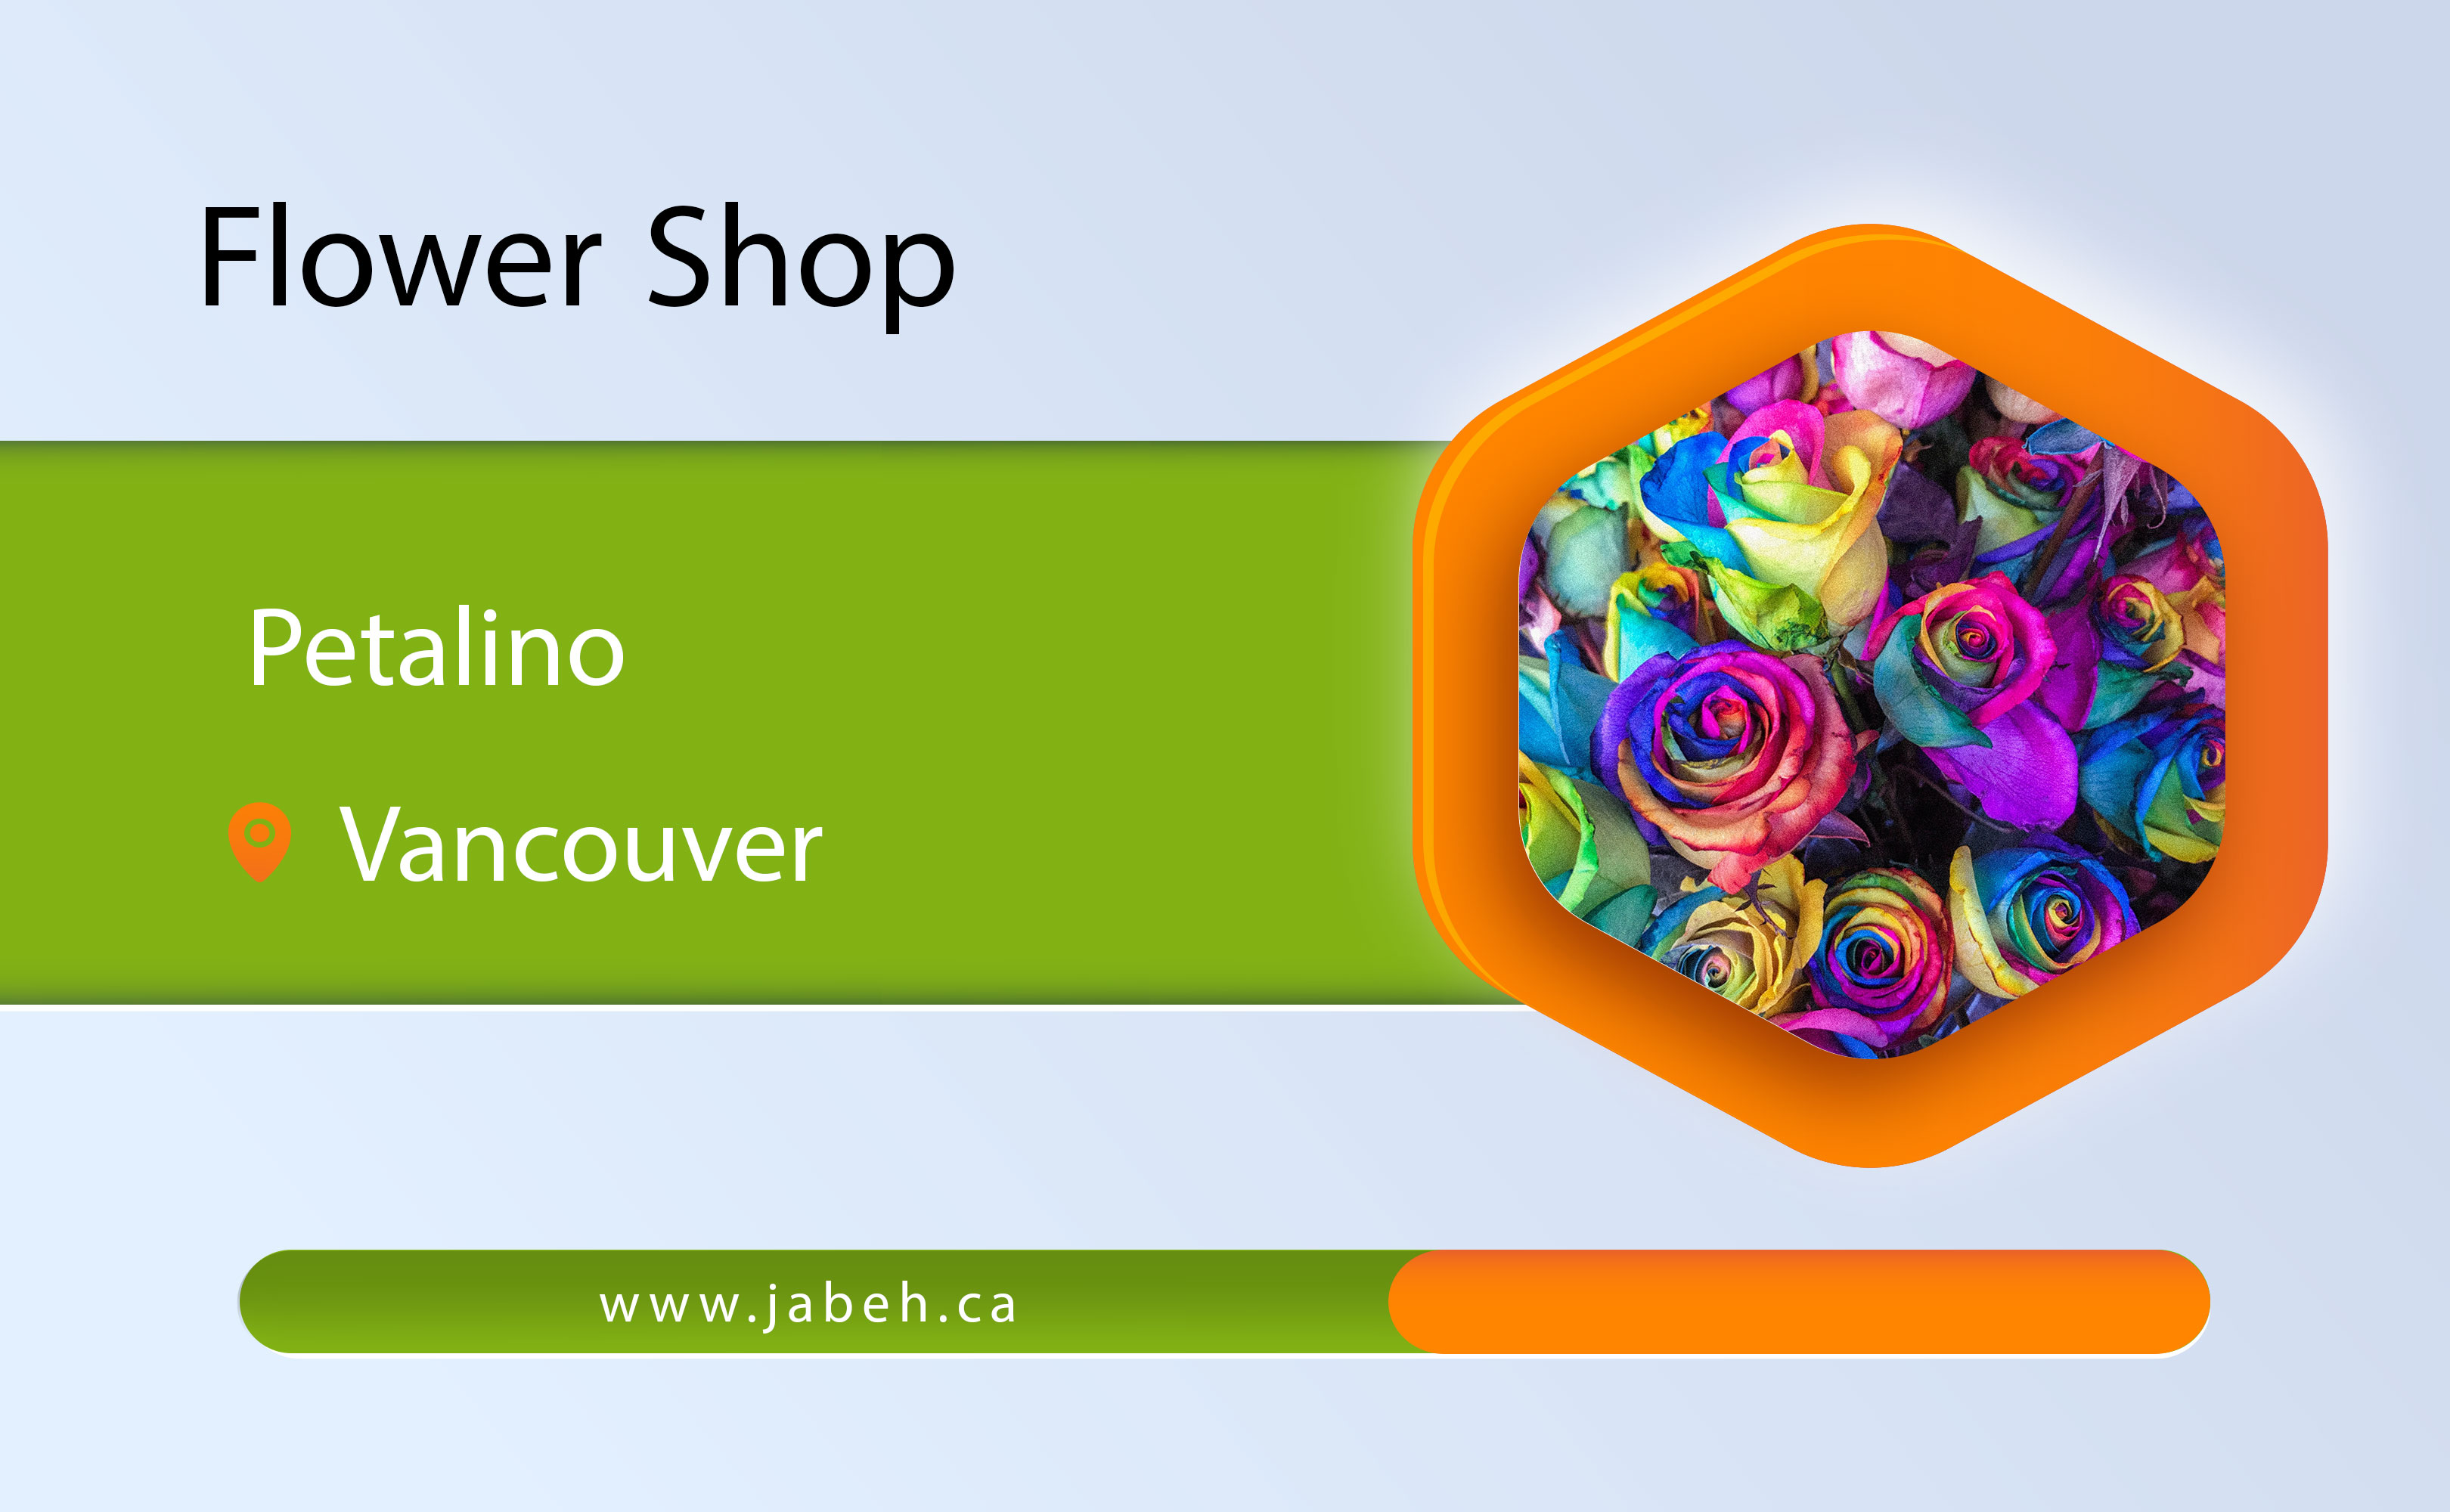 Petalino flower shop in Vancouver